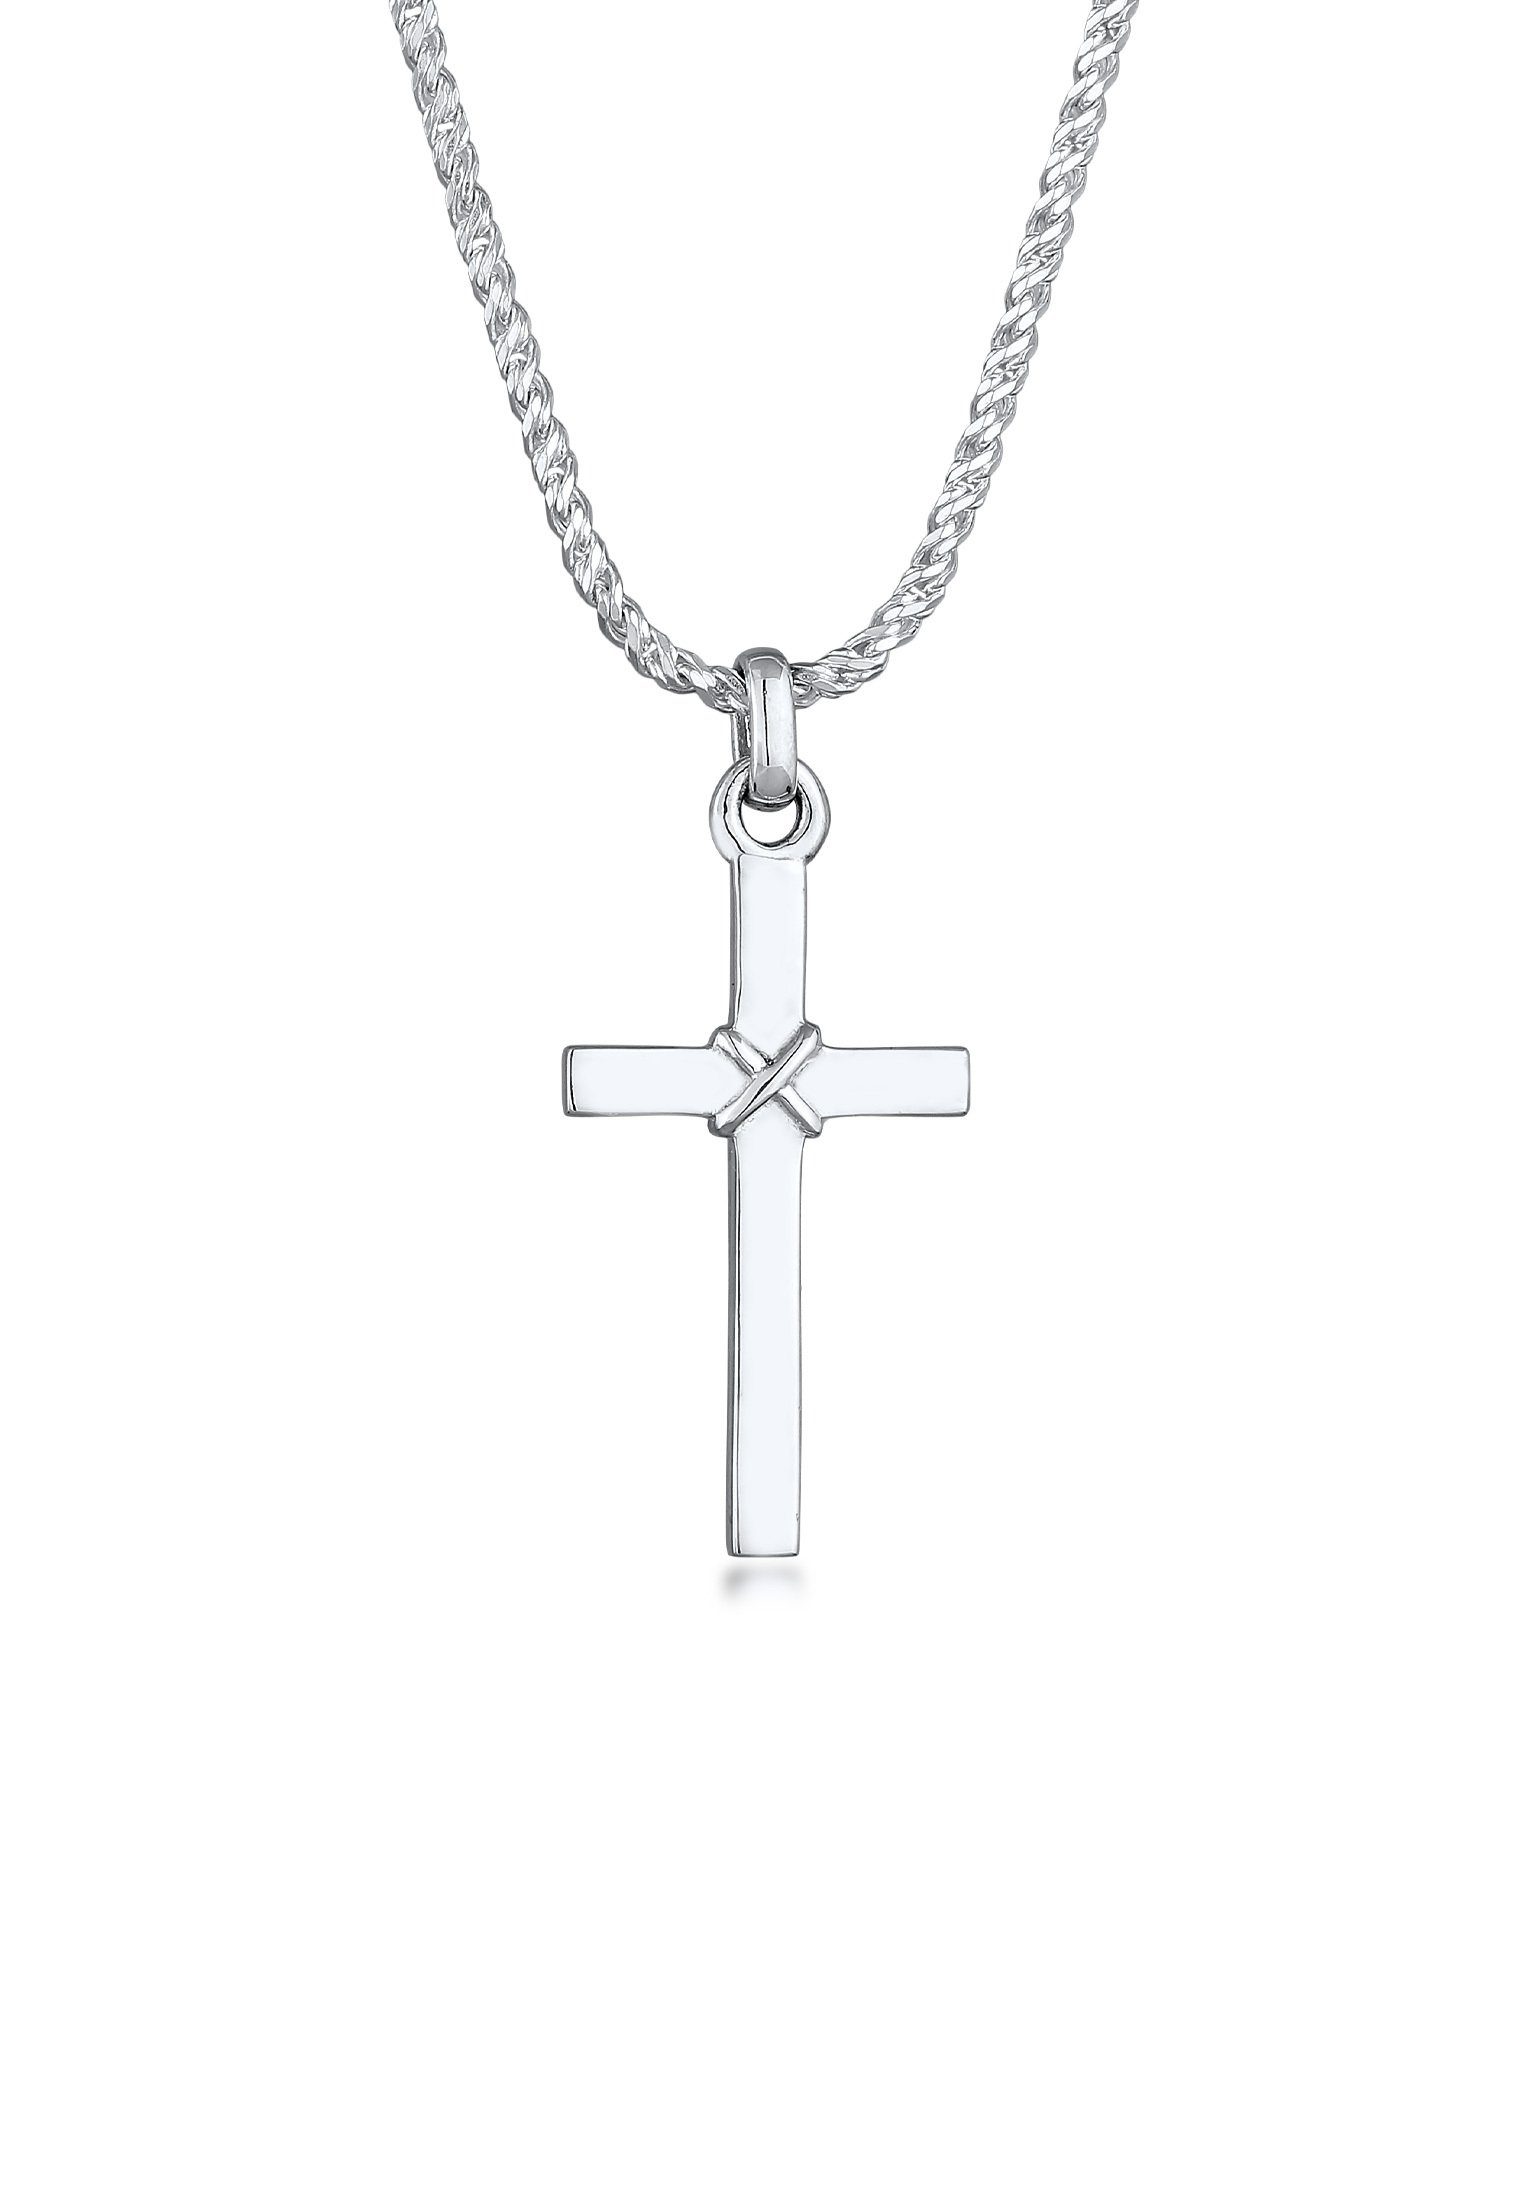 Kuzzoi Kette mit Anhänger Herren 925 Silber, Kordelkette Flach Kreuz Kreuz